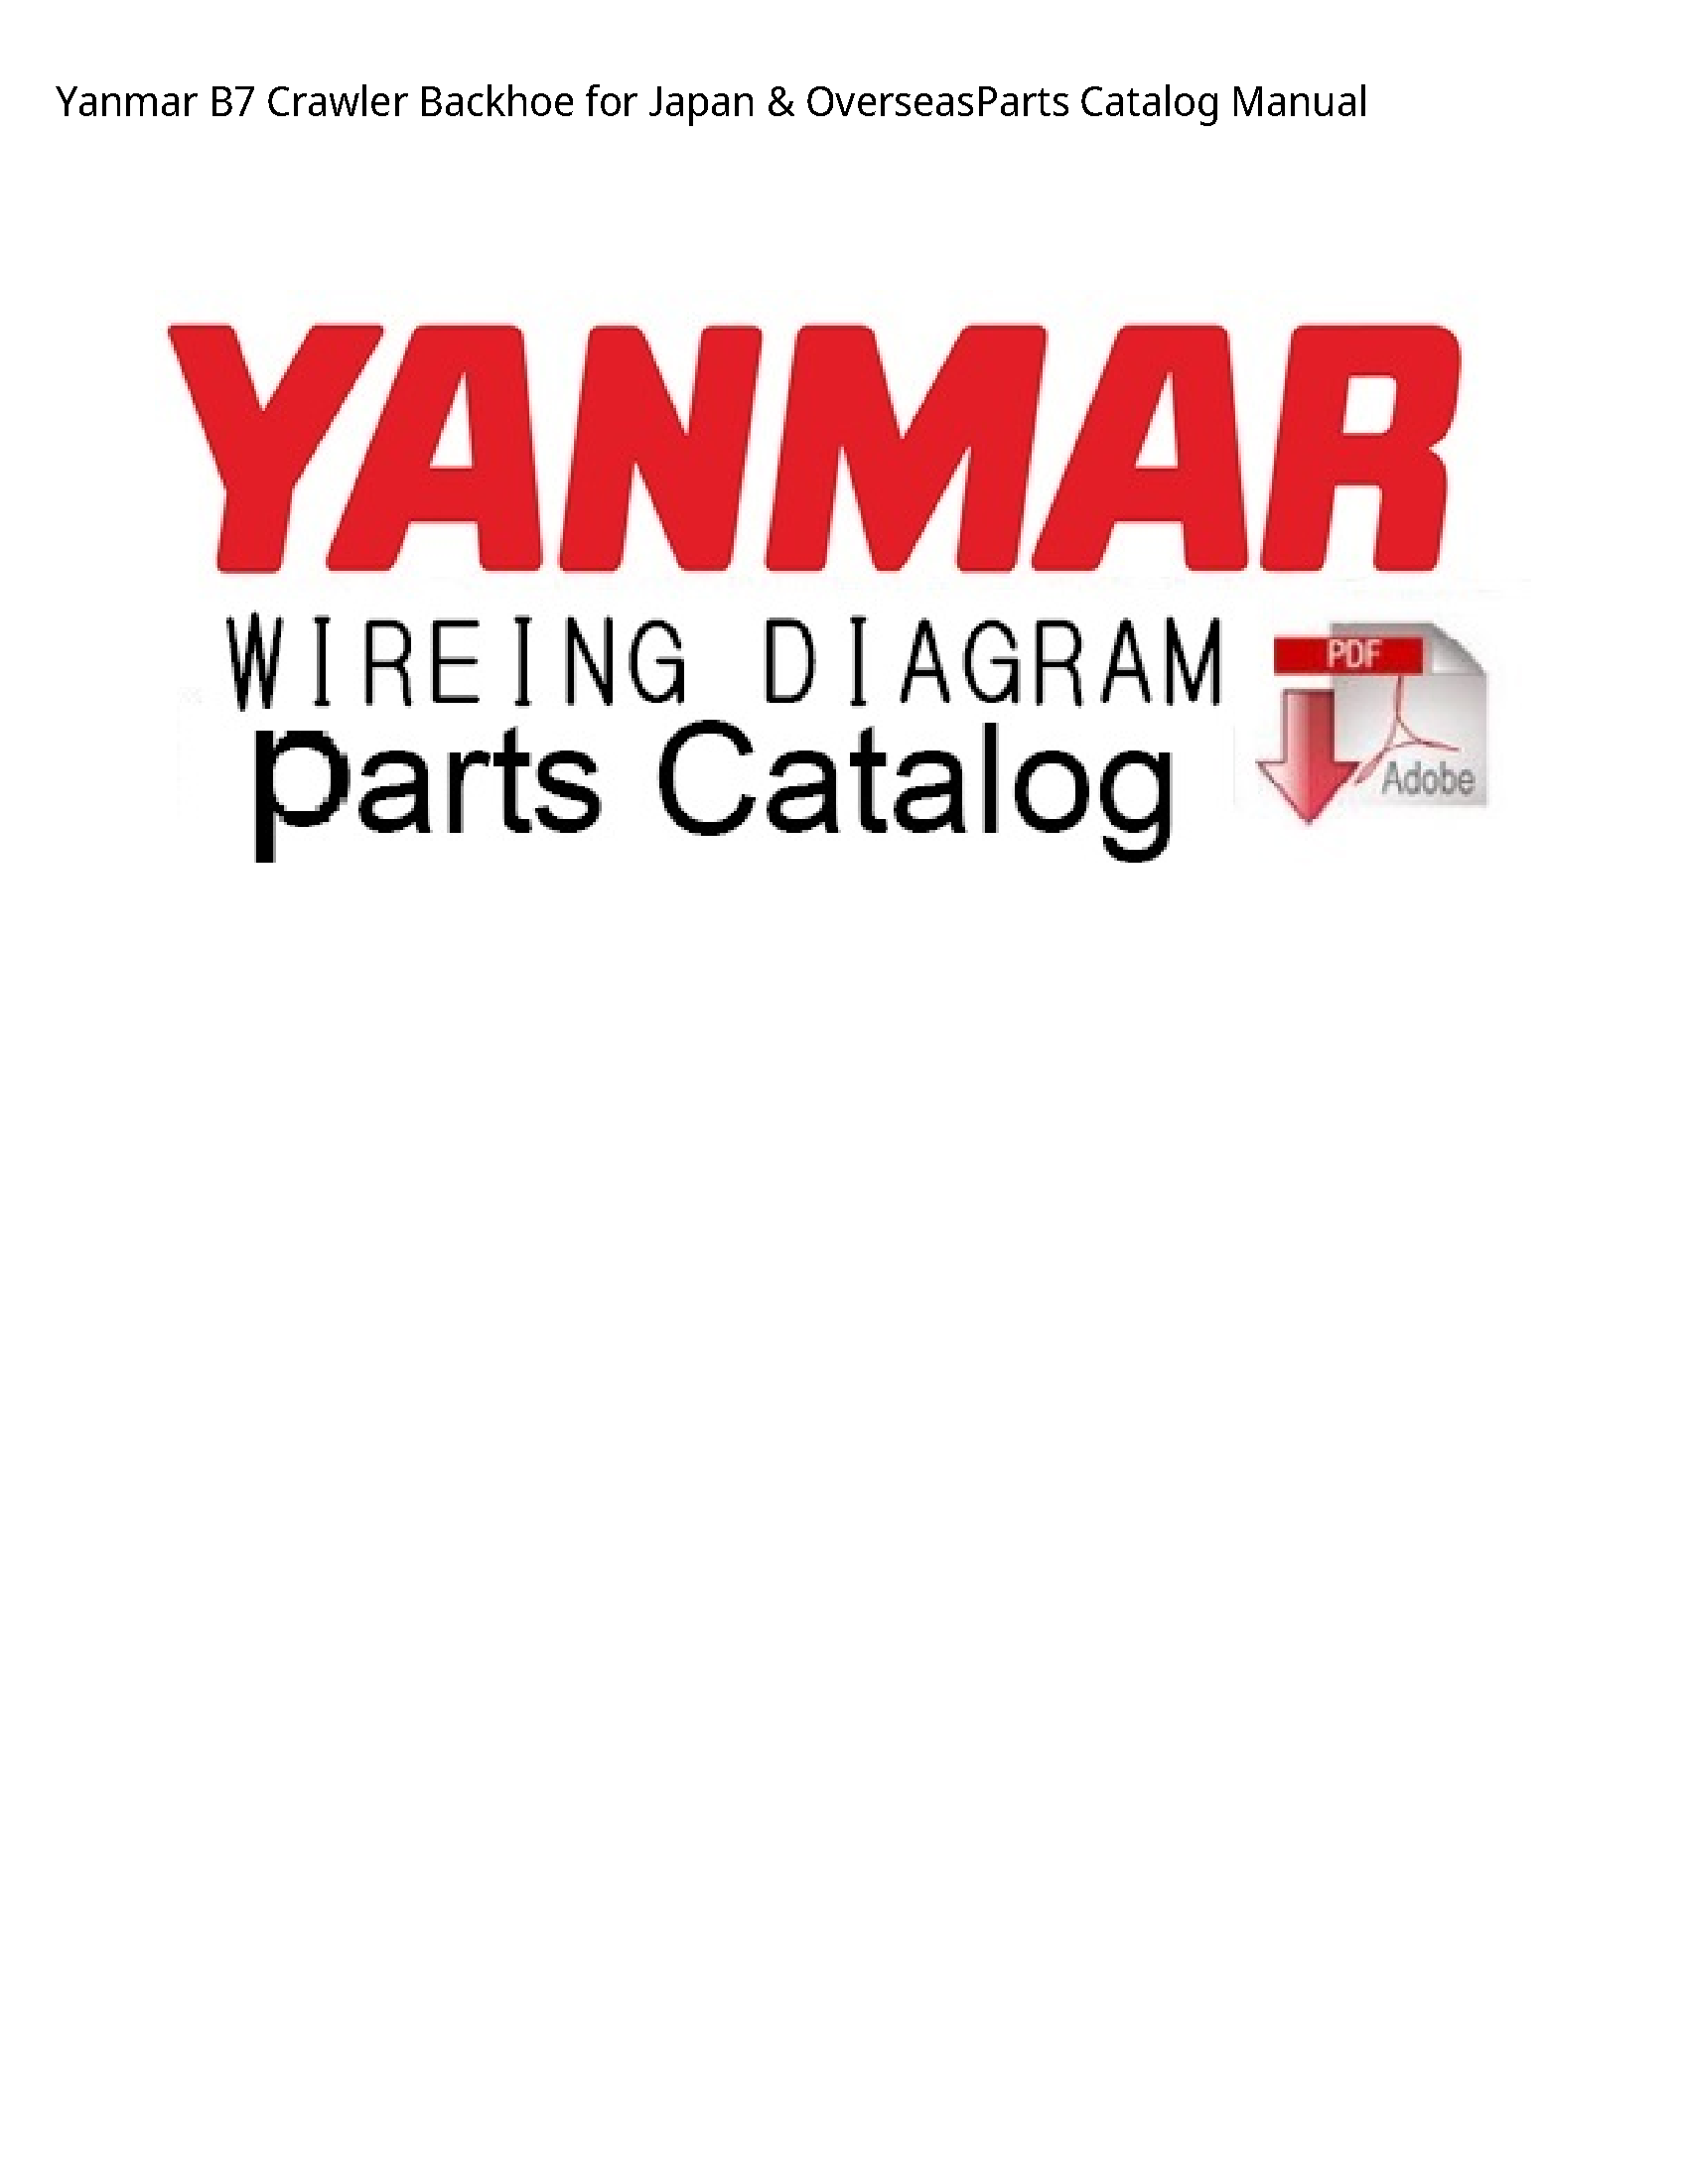 Yanmar B7 Crawler Backhoe for Japan OverseasParts Catalog manual